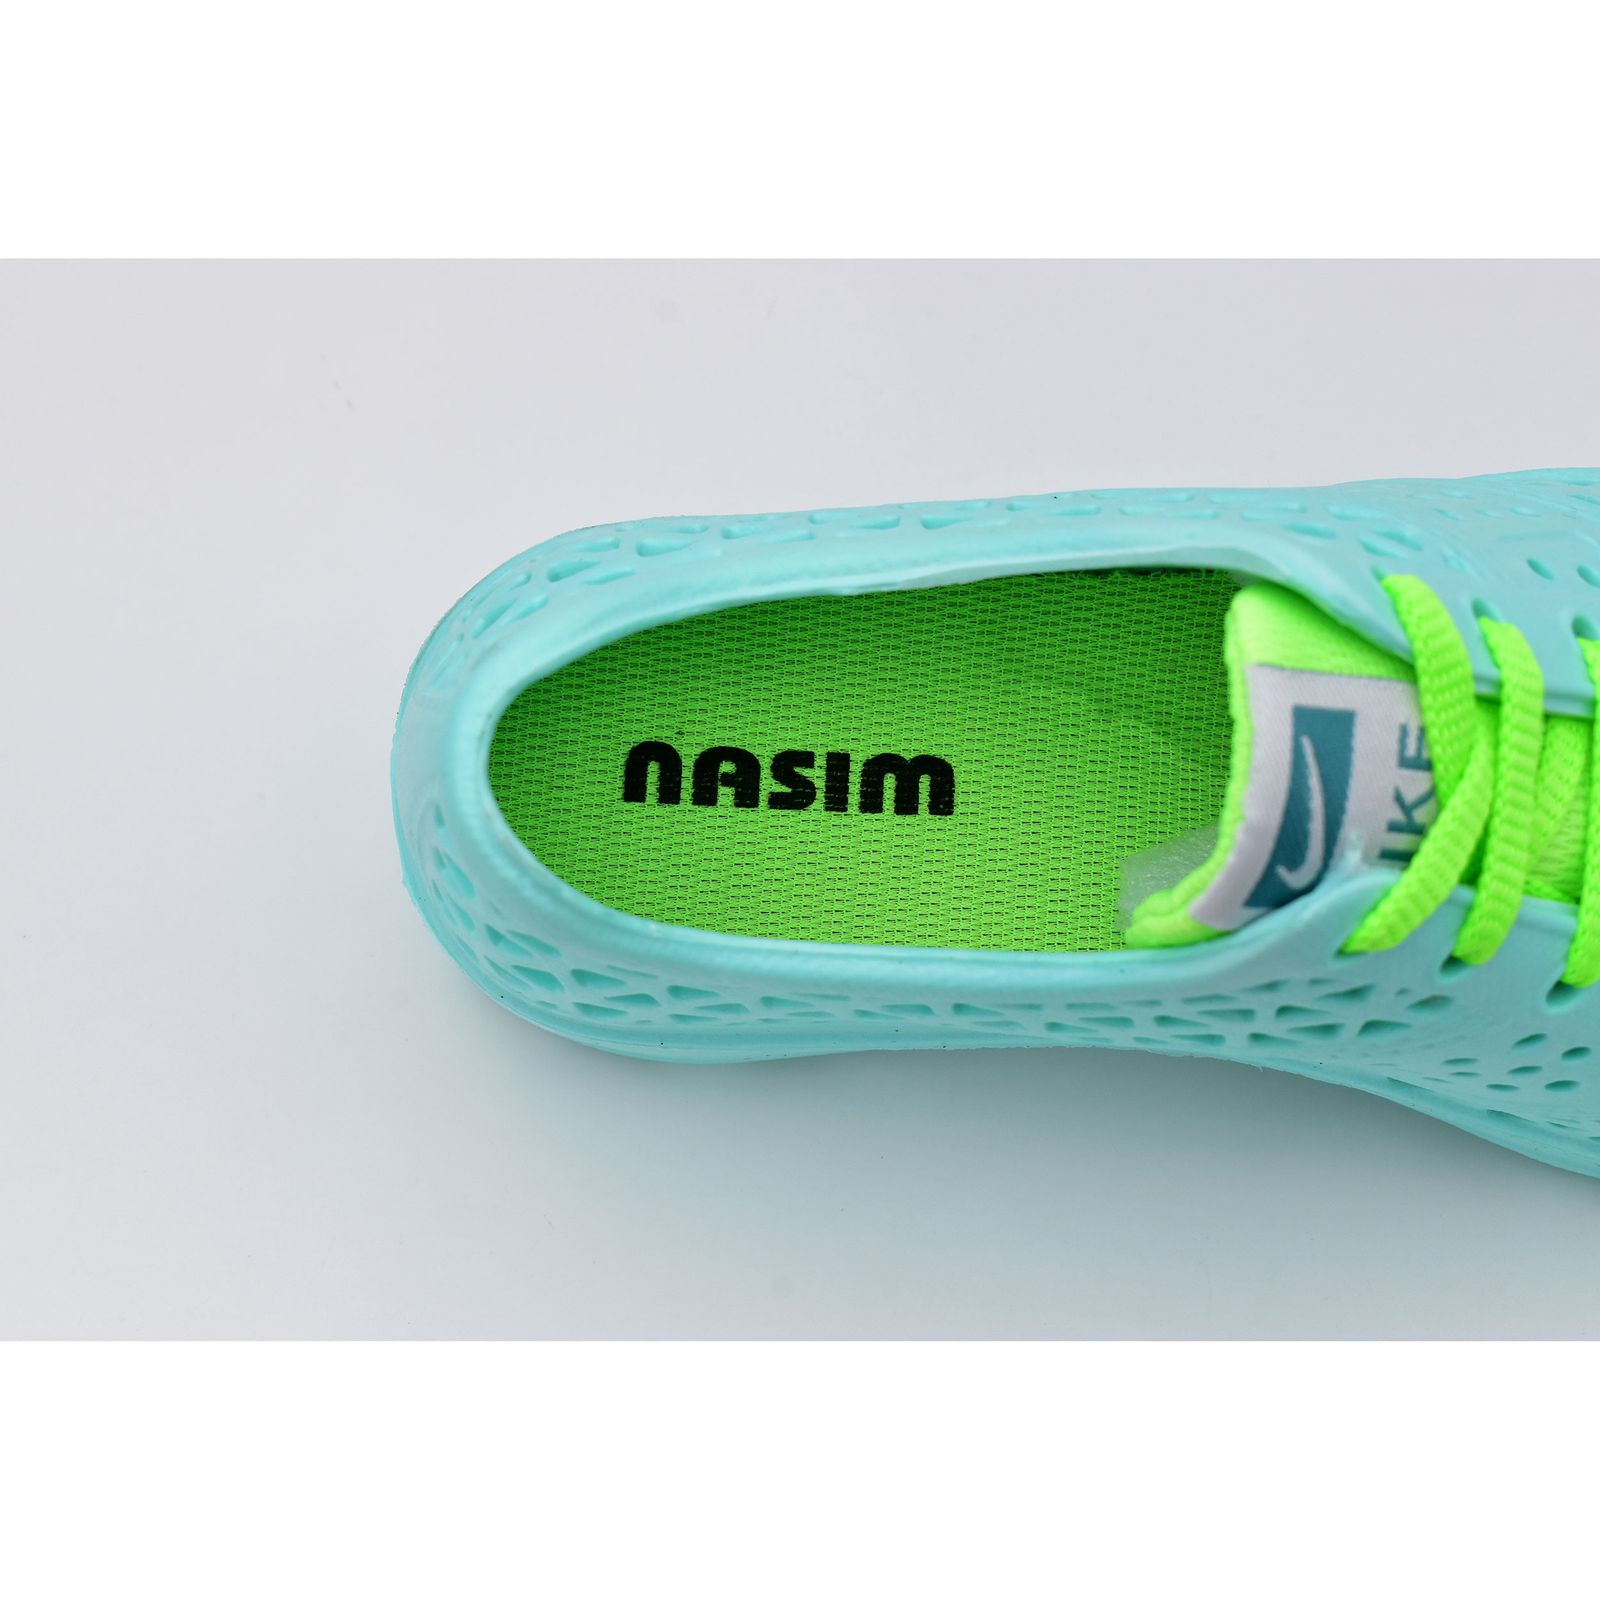  کفش ورزش های آبی زنانه نسیم مدل مرجان کد 8714 -  - 5